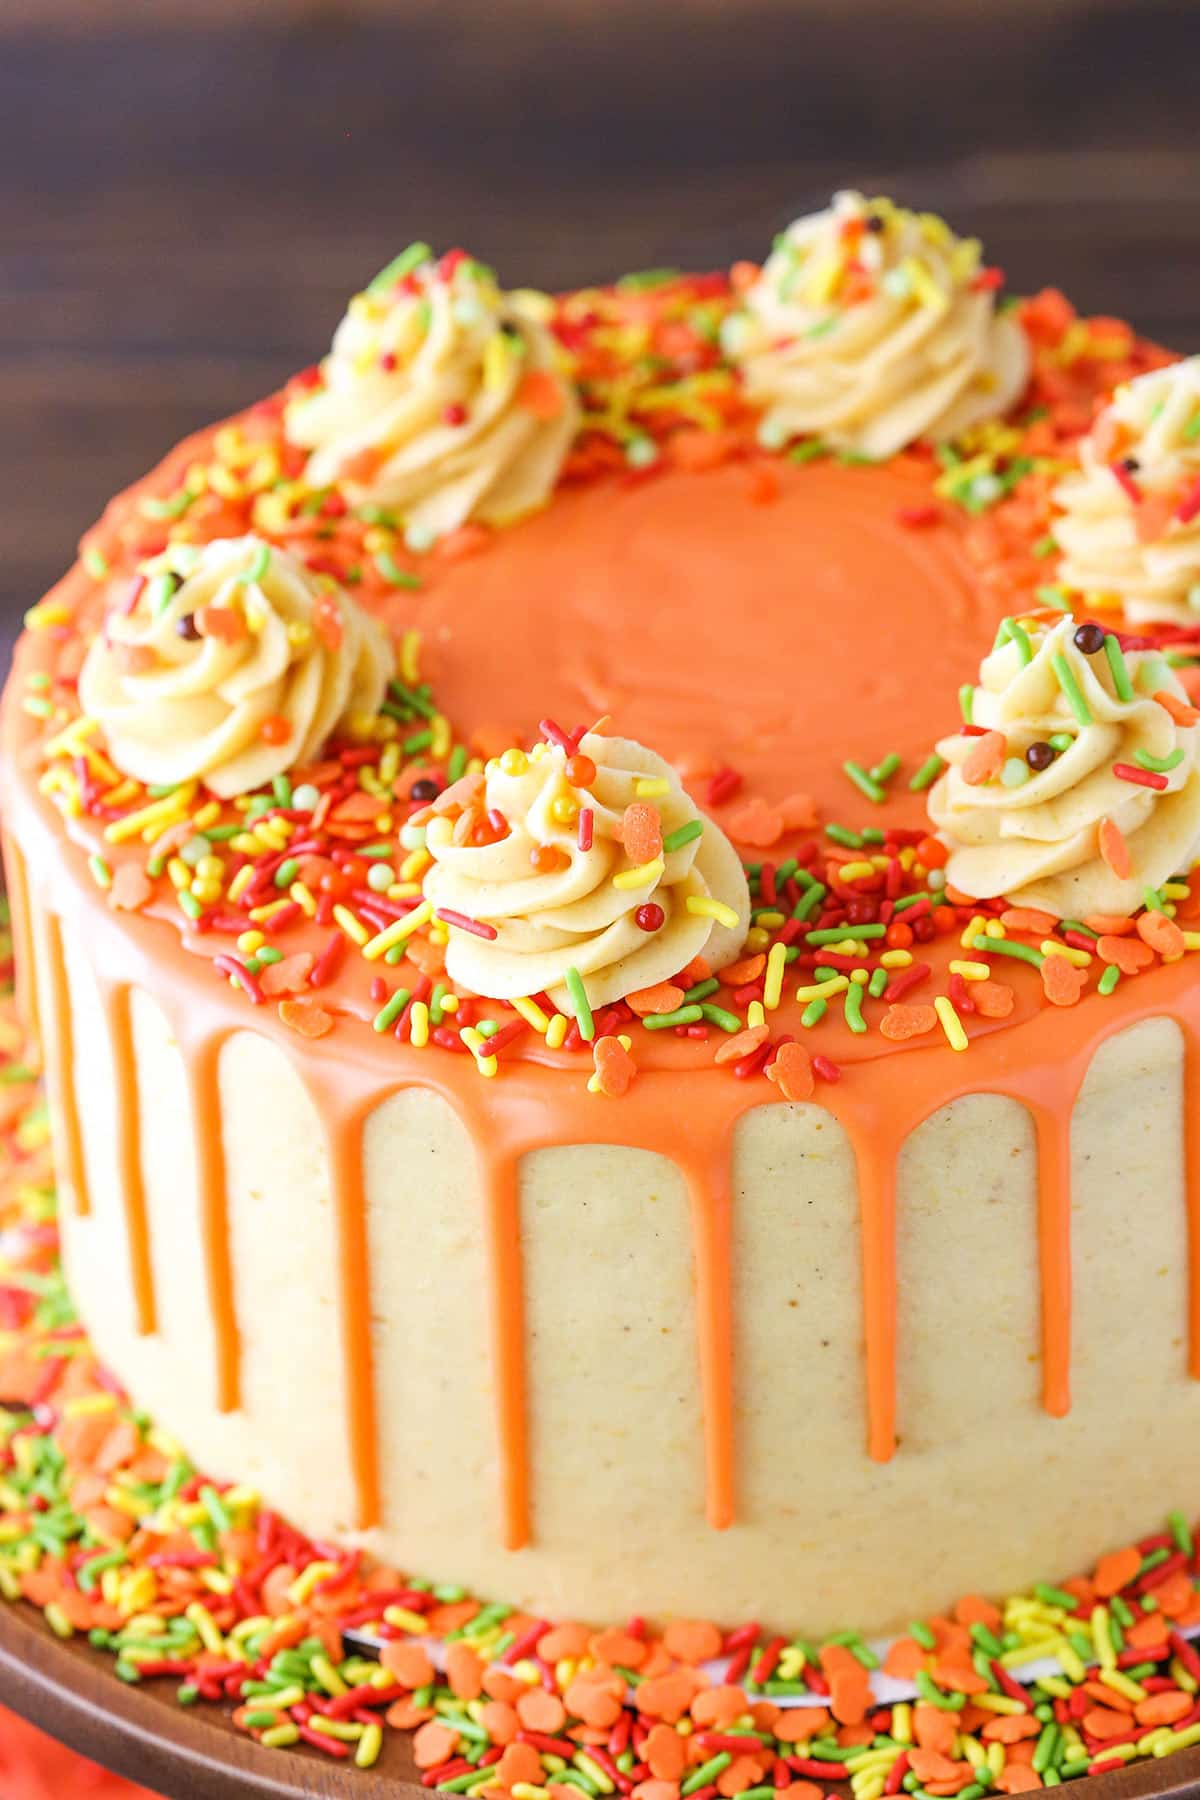 A full Spice Cake with Pumpkin Mascarpone Buttercream